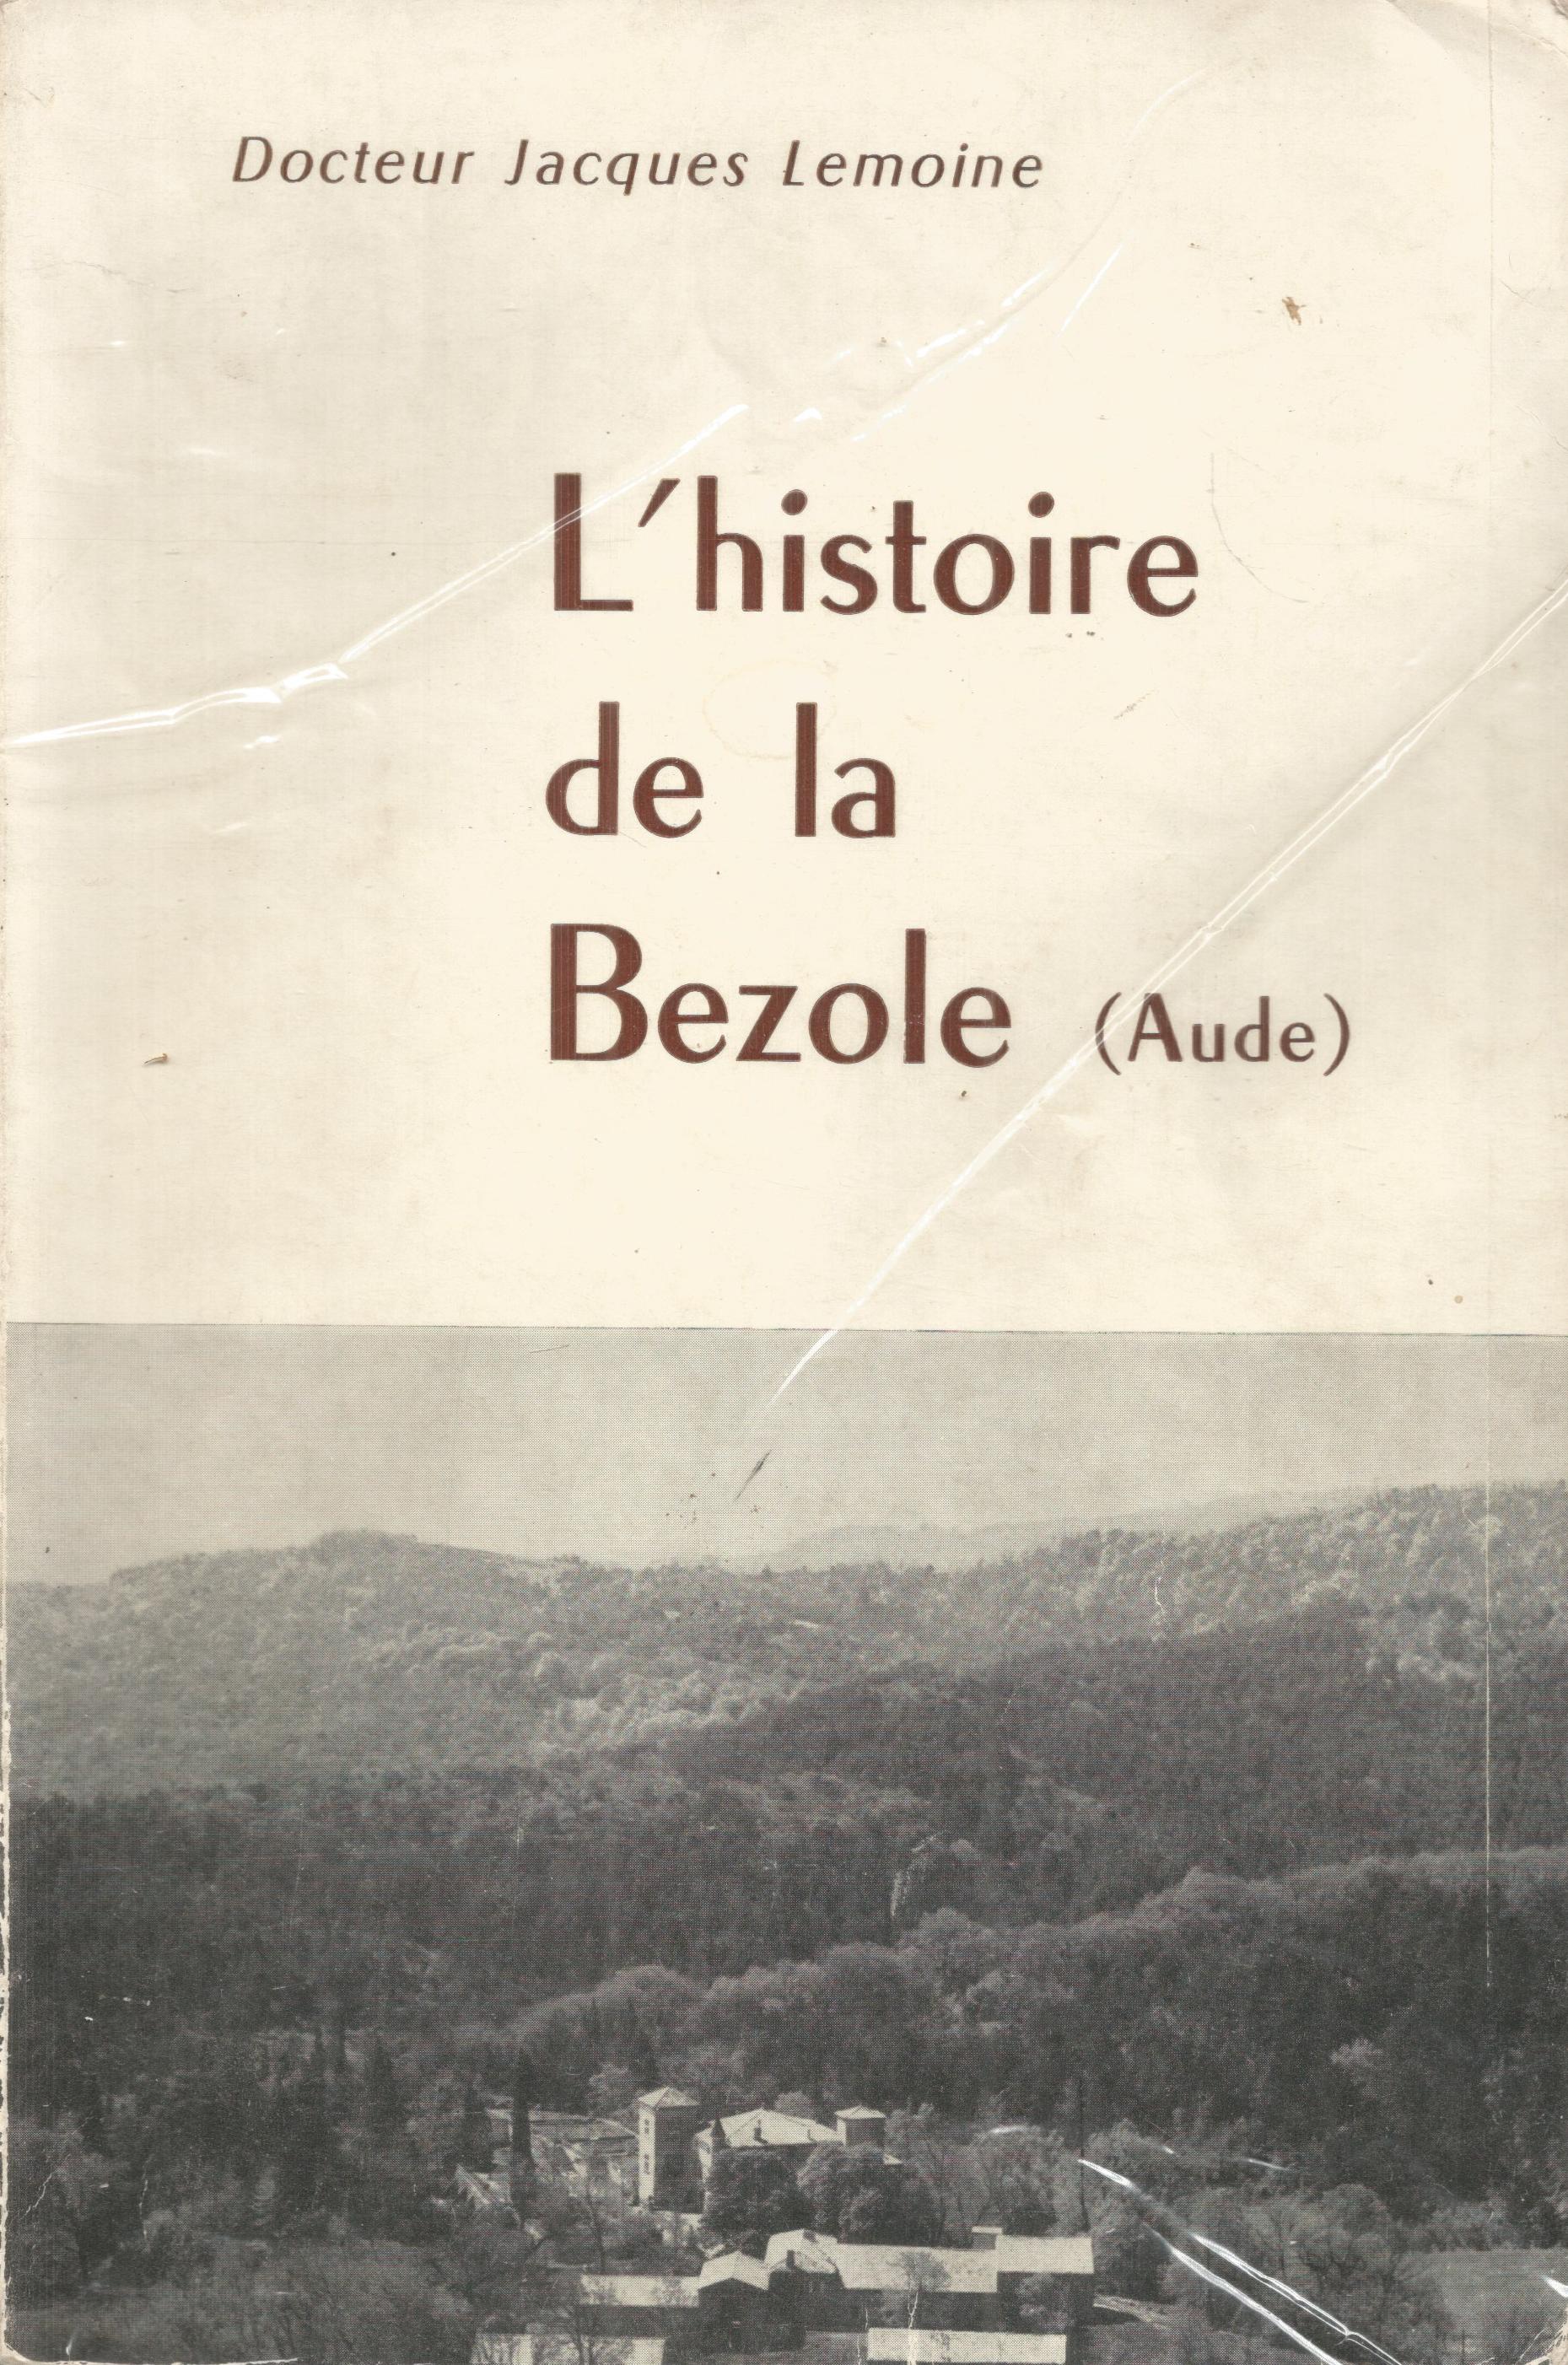 Docteur Jacques Lemoine, un livre de la librairie Aude